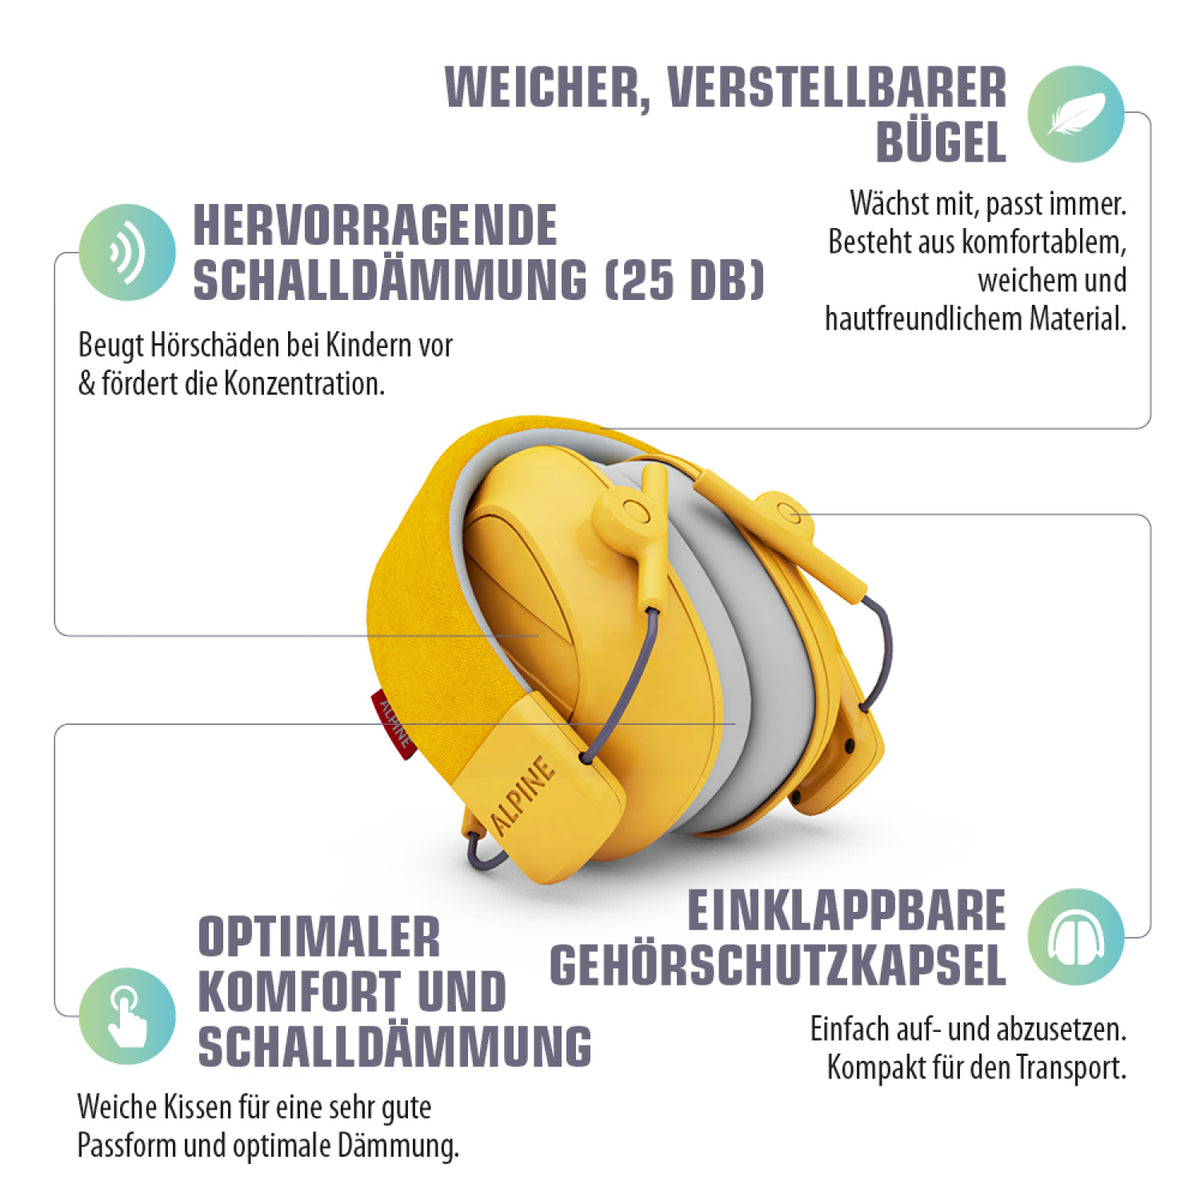 Gehörschutz Alpine Muffy für Kinder gelb